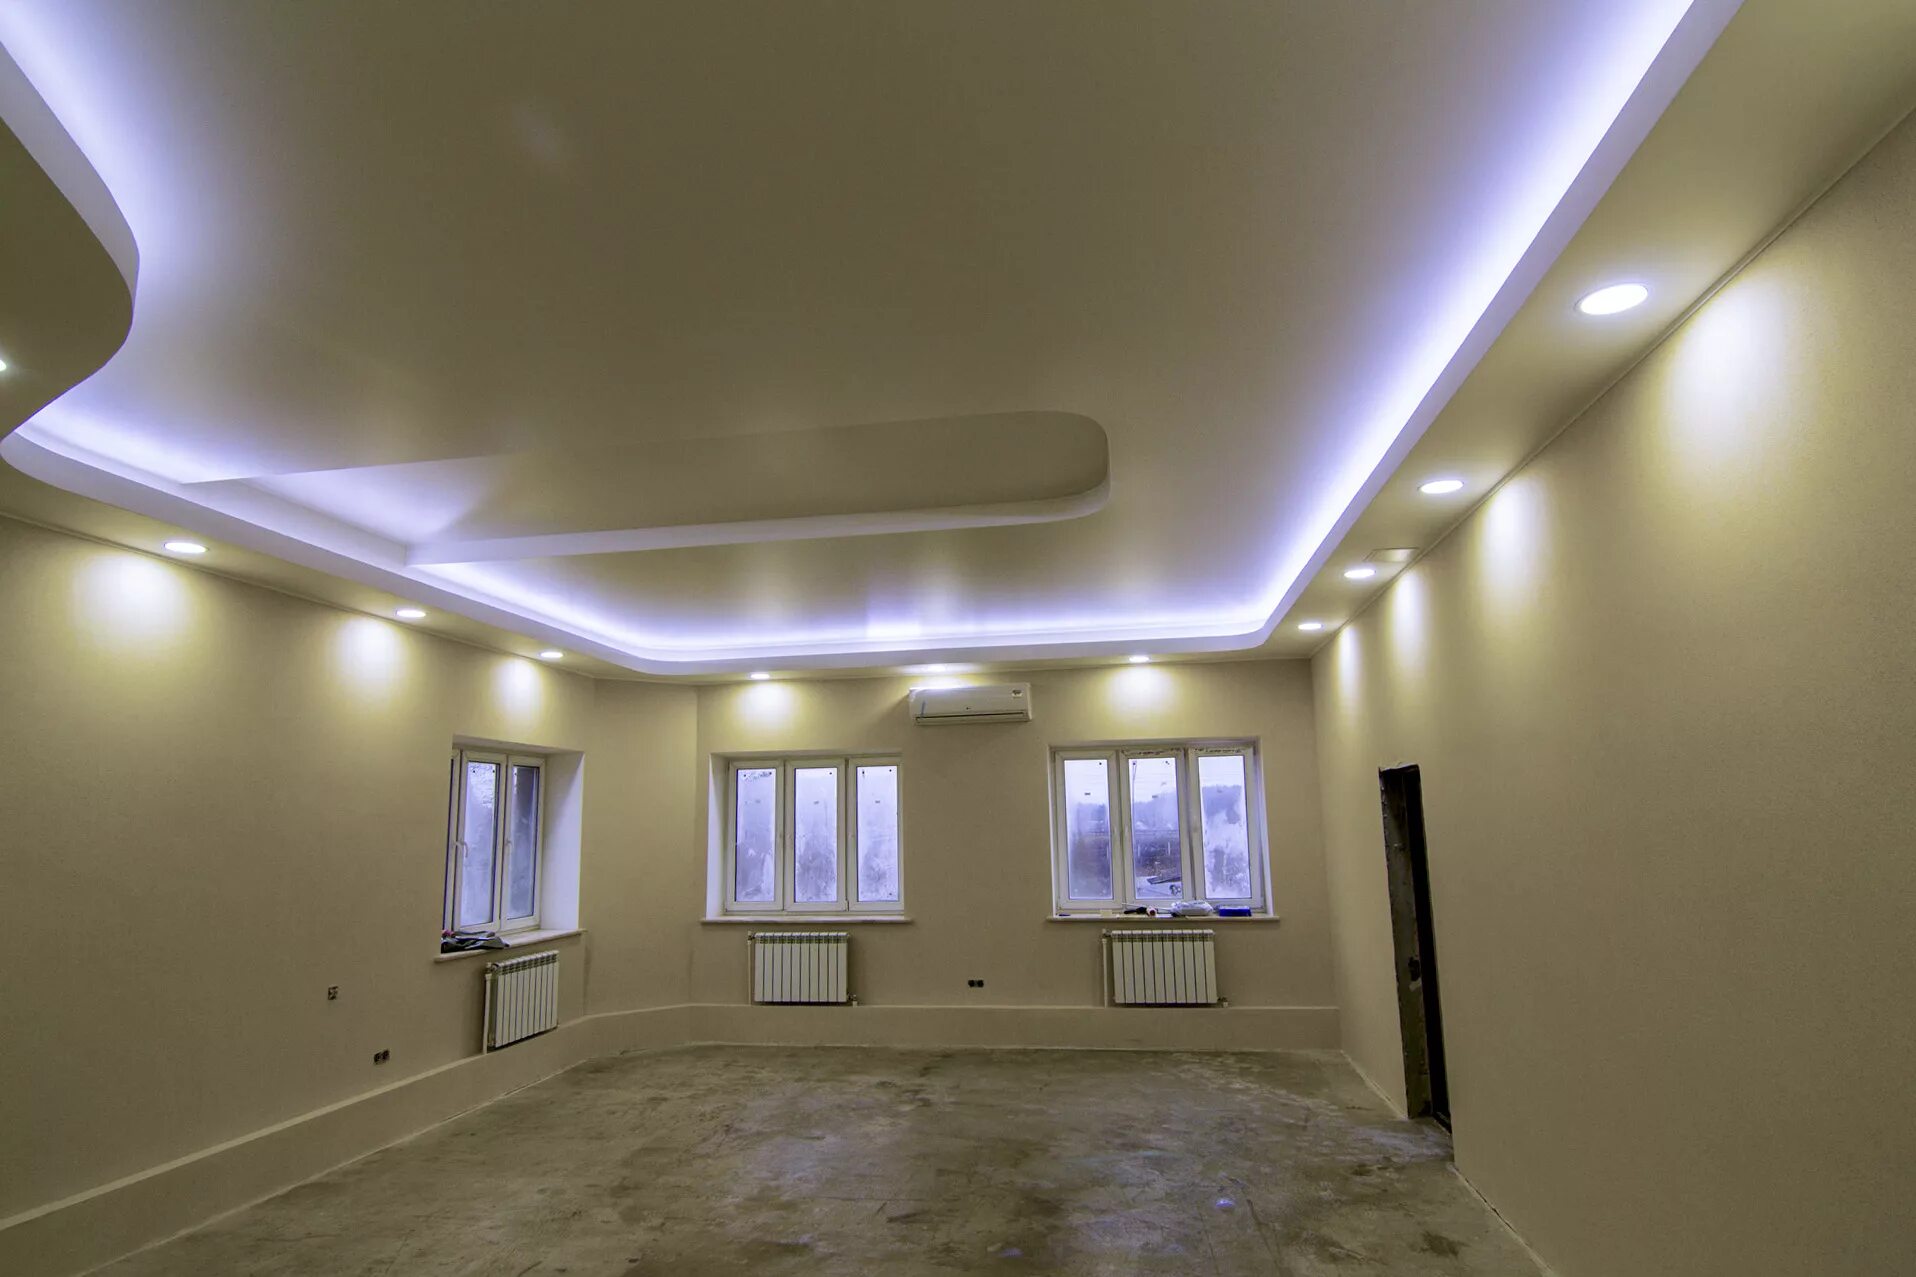 Потолок с подсветкой. Натяжные потолки с подсветкой. Навесные потолки с подсветкой. Навесной потолок с подсветкой.